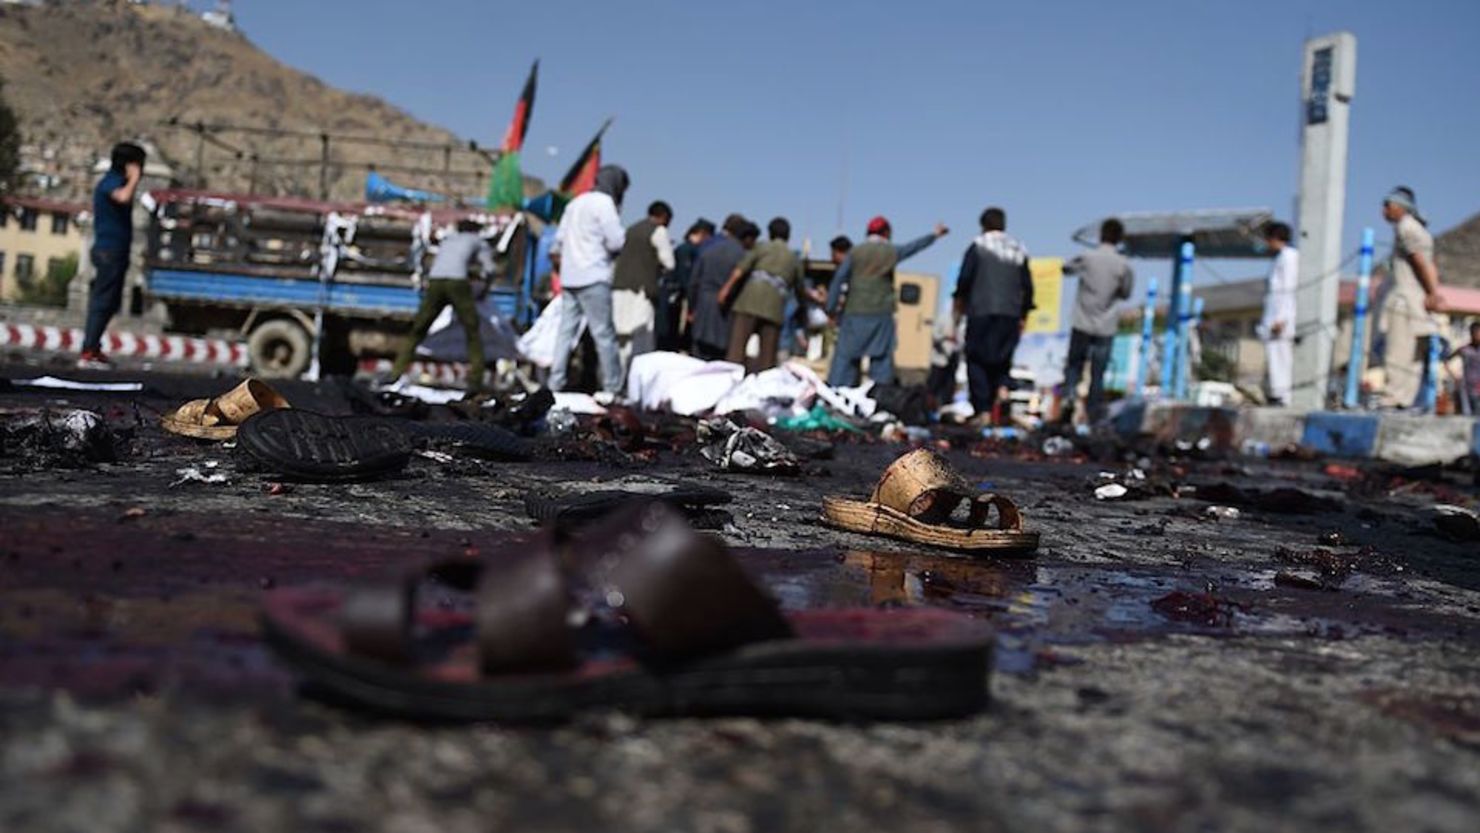 Varias sandalias quedaron así: ensangrentadas, sin dueño, en el lugar del ataque de terroristas de ISIS en Kabul.